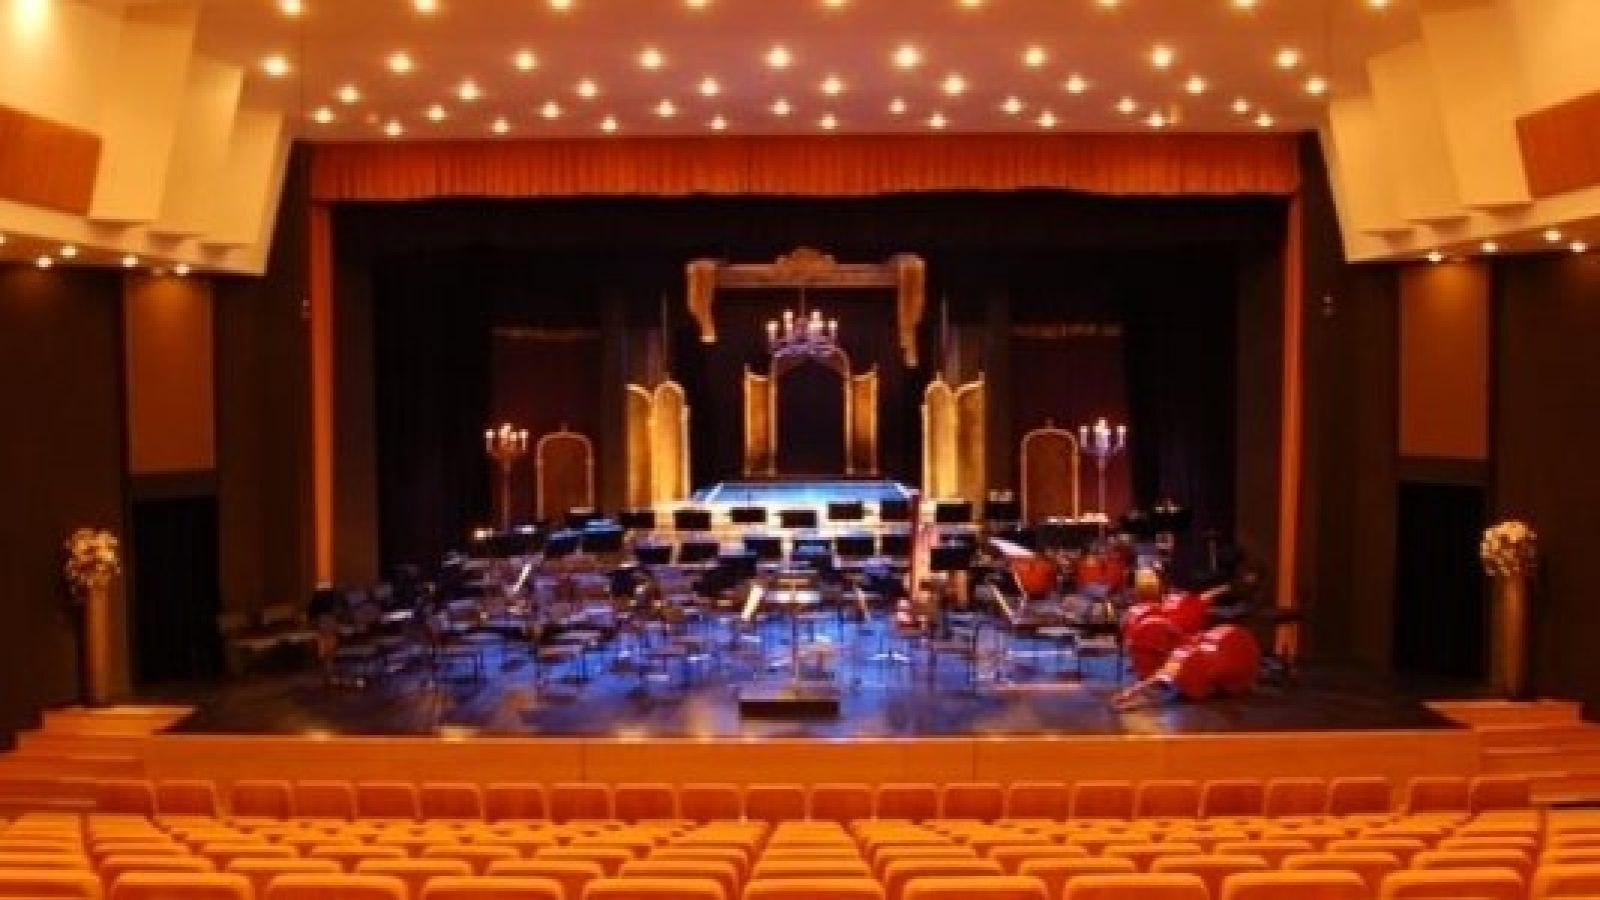 Interior of Music Theatre